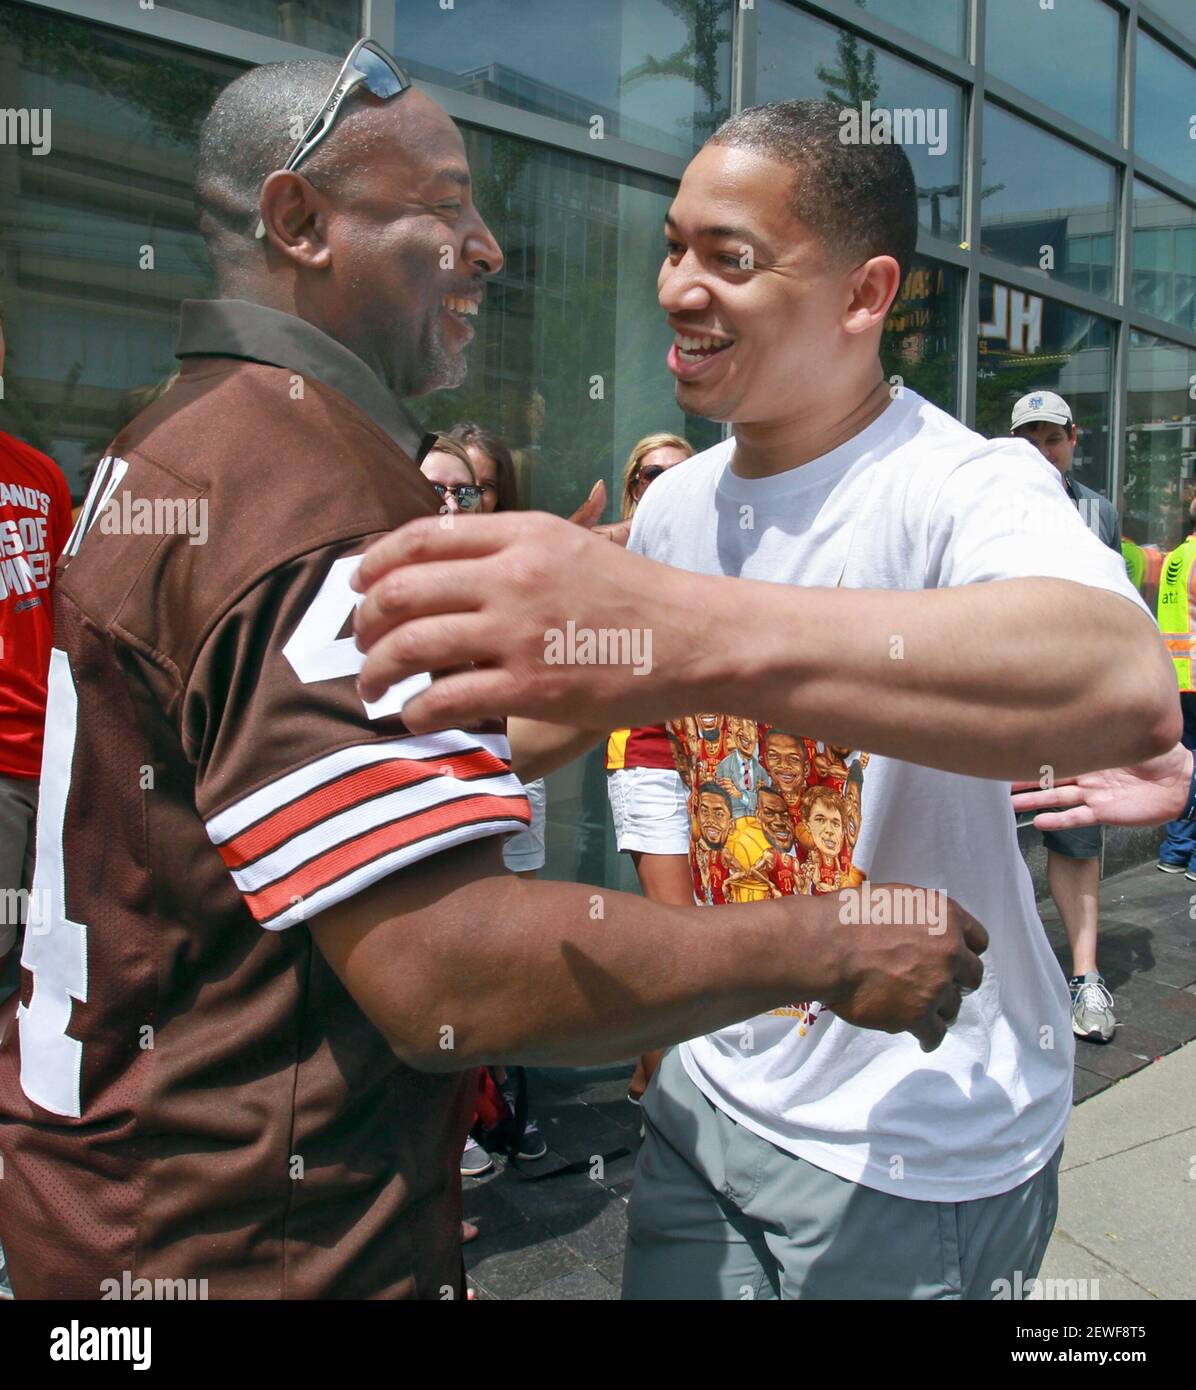 L'ancien Cleveland Browns qui a couru Ernest Byner, à gauche, reçoit un câlin de l'entraîneur-chef de Cleveland Cavaliers Tyronn lue lors de la célébration du championnat NBA de Cavs le mercredi 22 juin 2016, à Cleveland. Banque D'Images